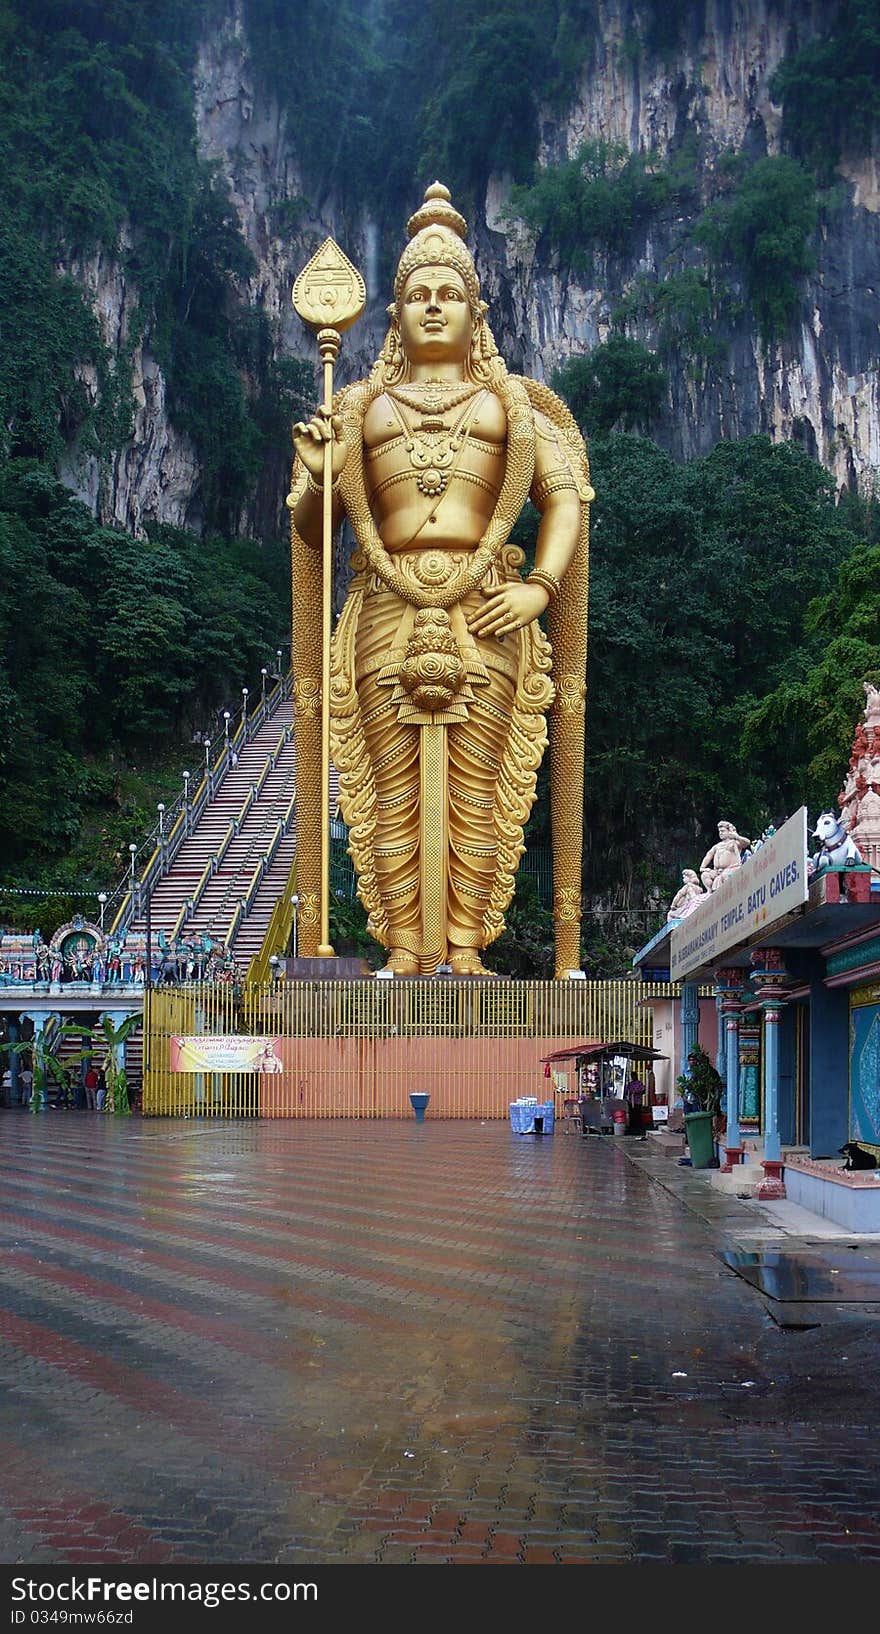 Lord murugan statue at batu caves, malaysia